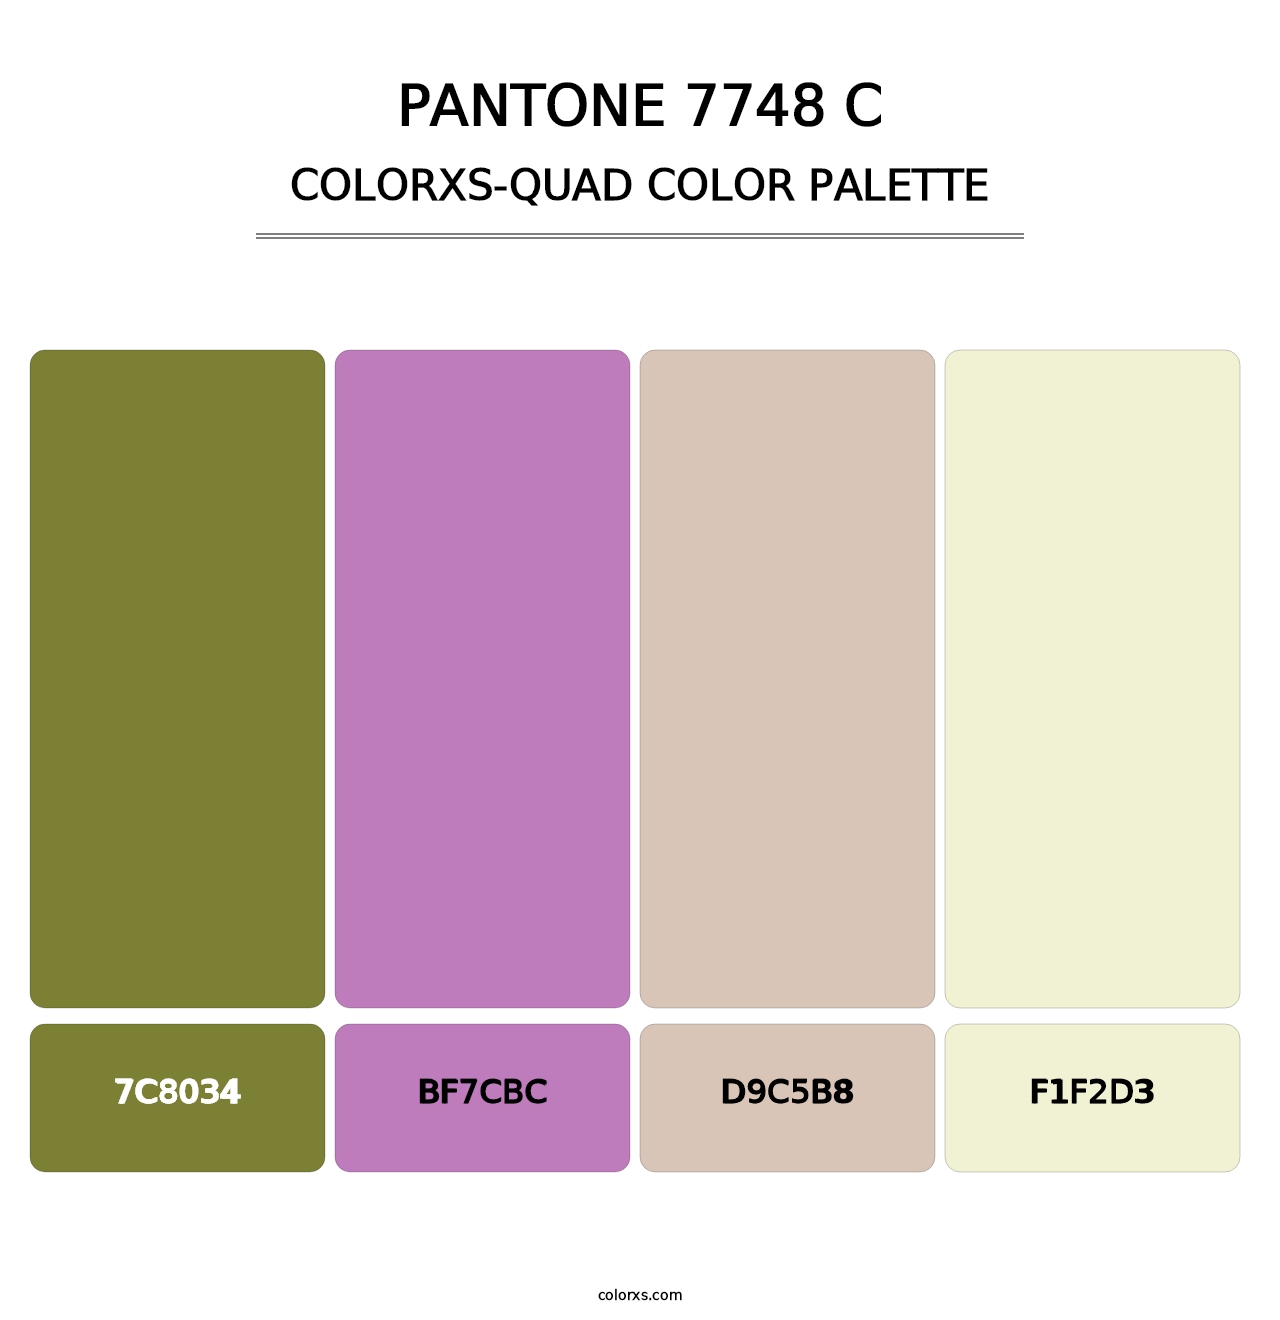 PANTONE 7748 C - Colorxs Quad Palette